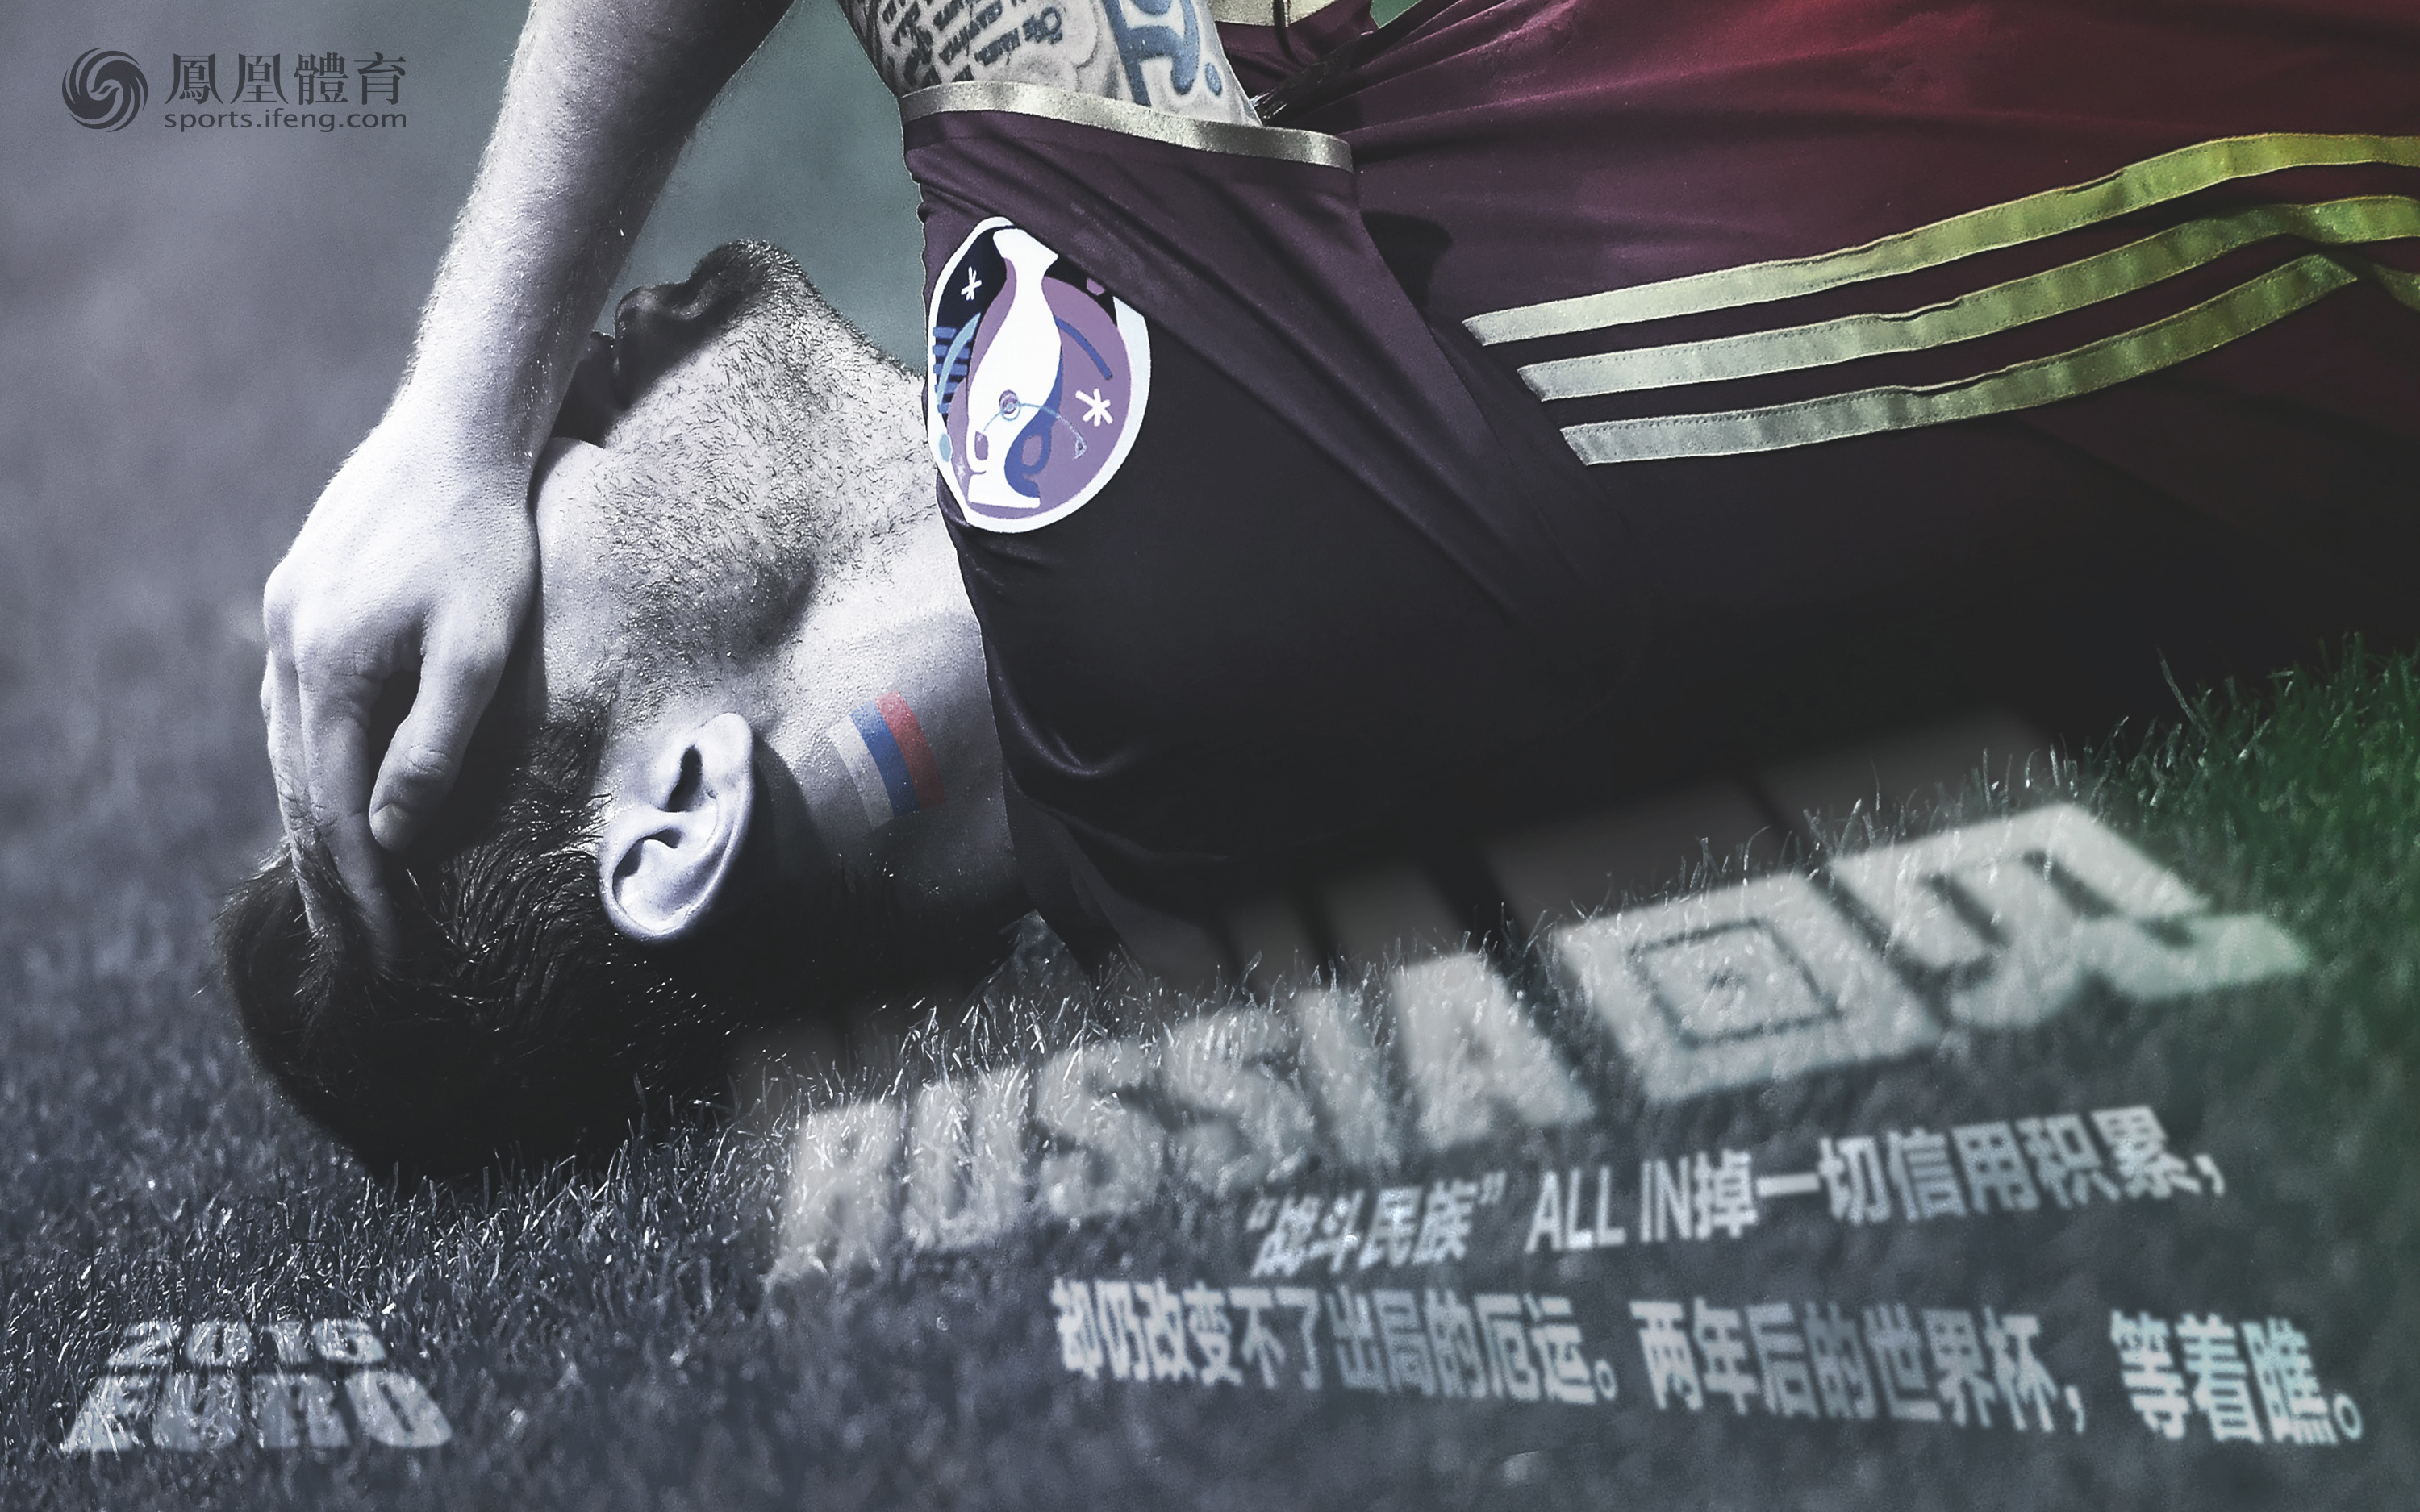 凤凰体育欧洲杯海报第13期:RUSSIA 回见